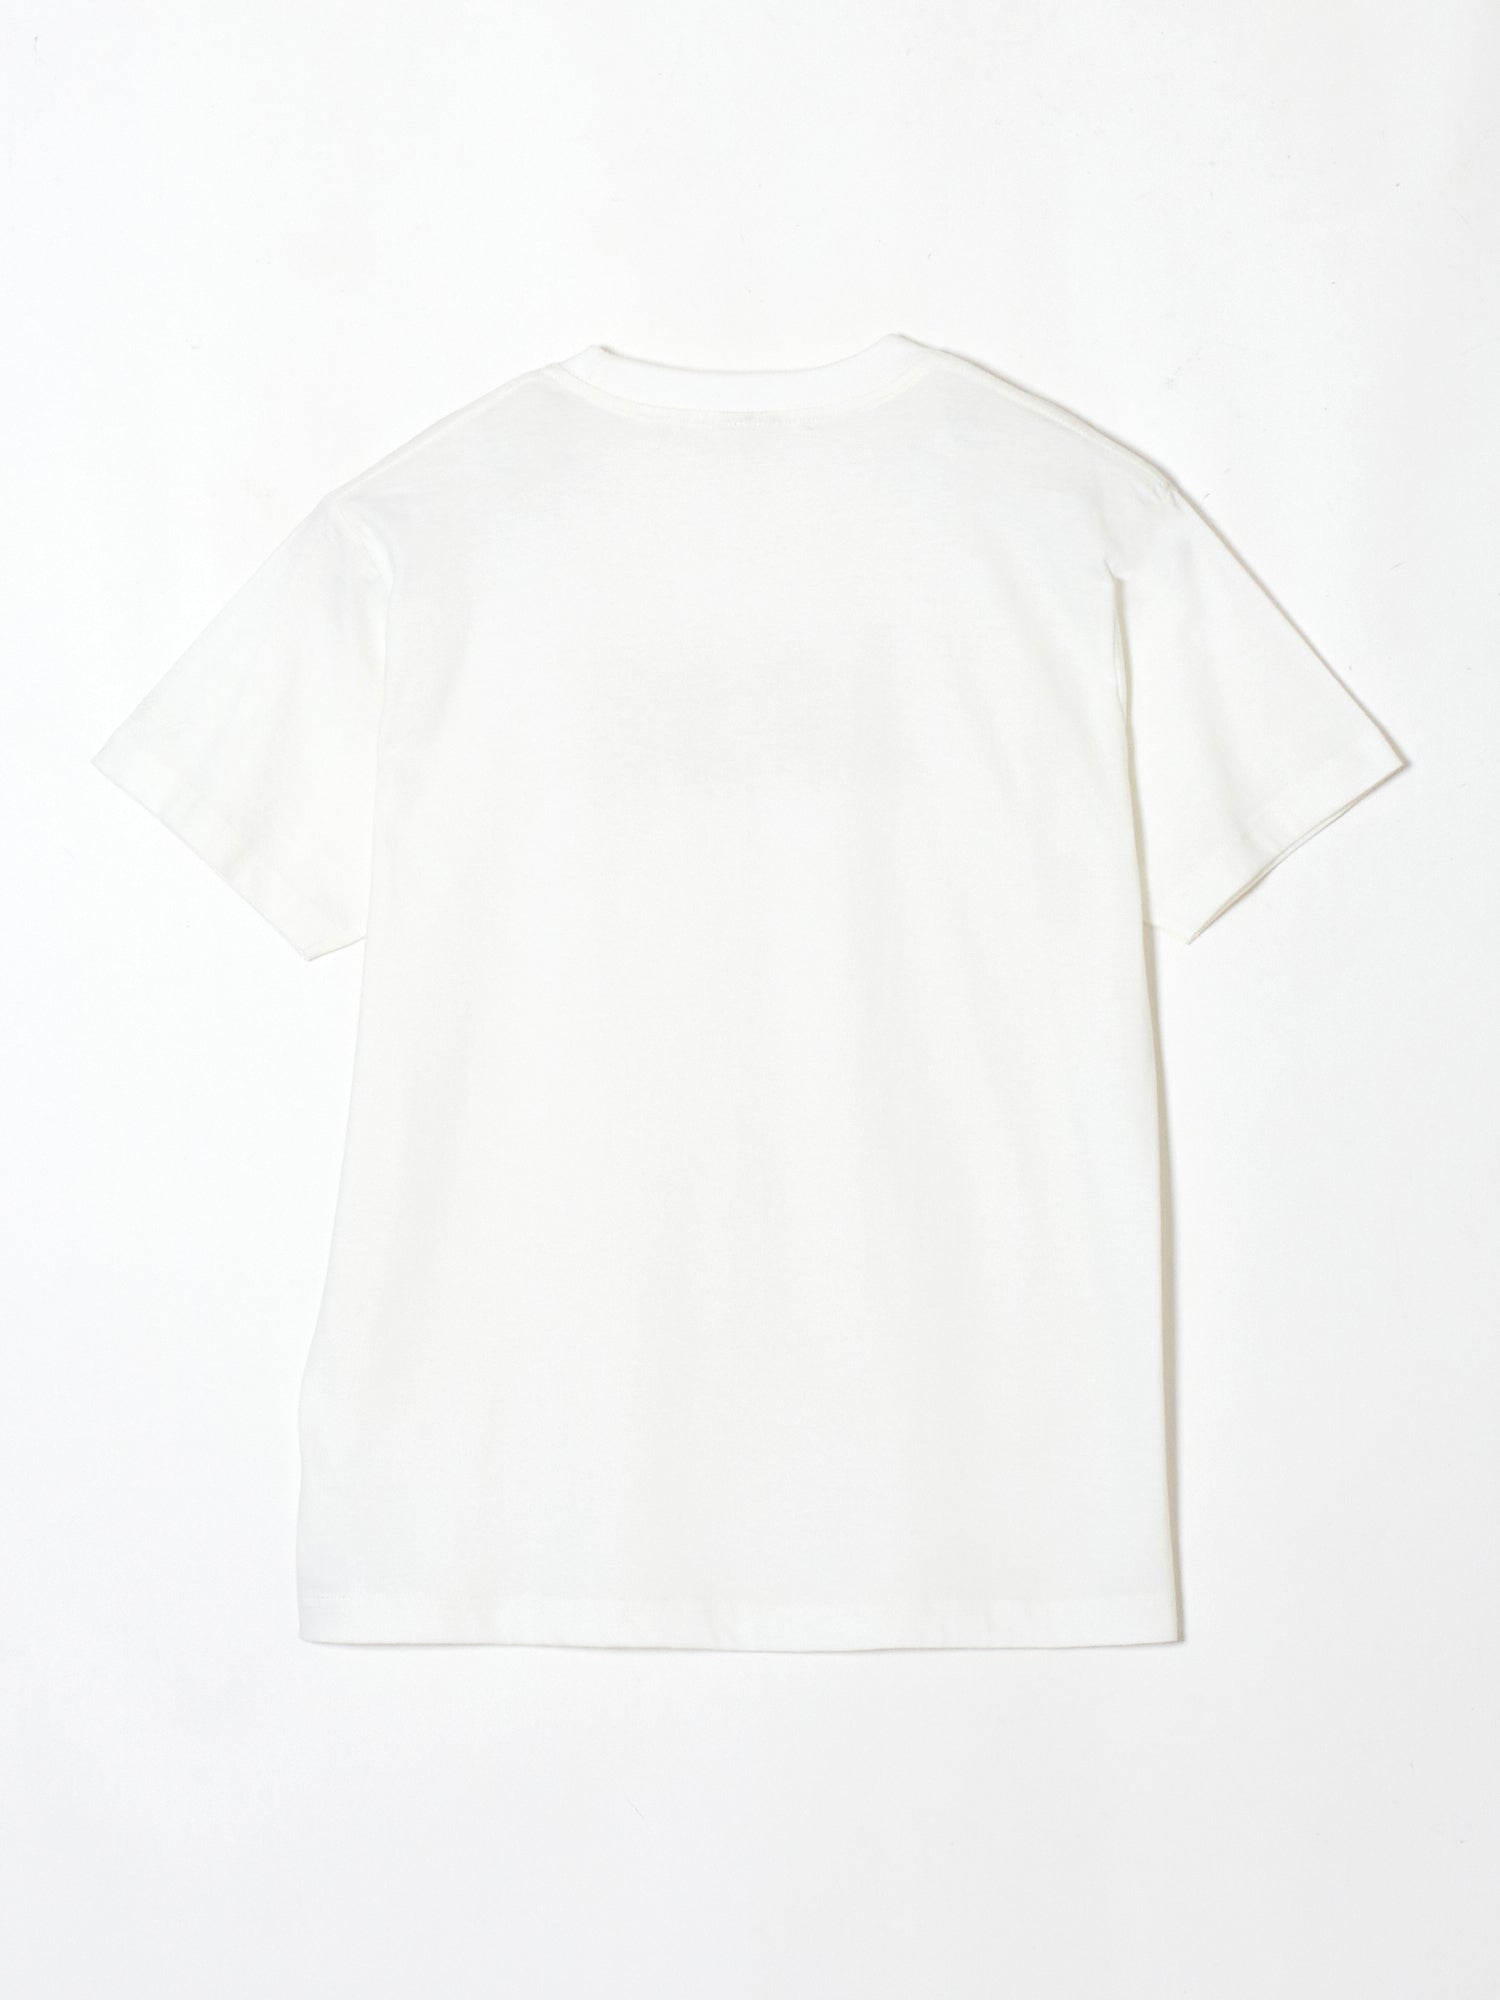 LOVE T-shirt White【Delivery in June 2024】 – tanakadaisuke